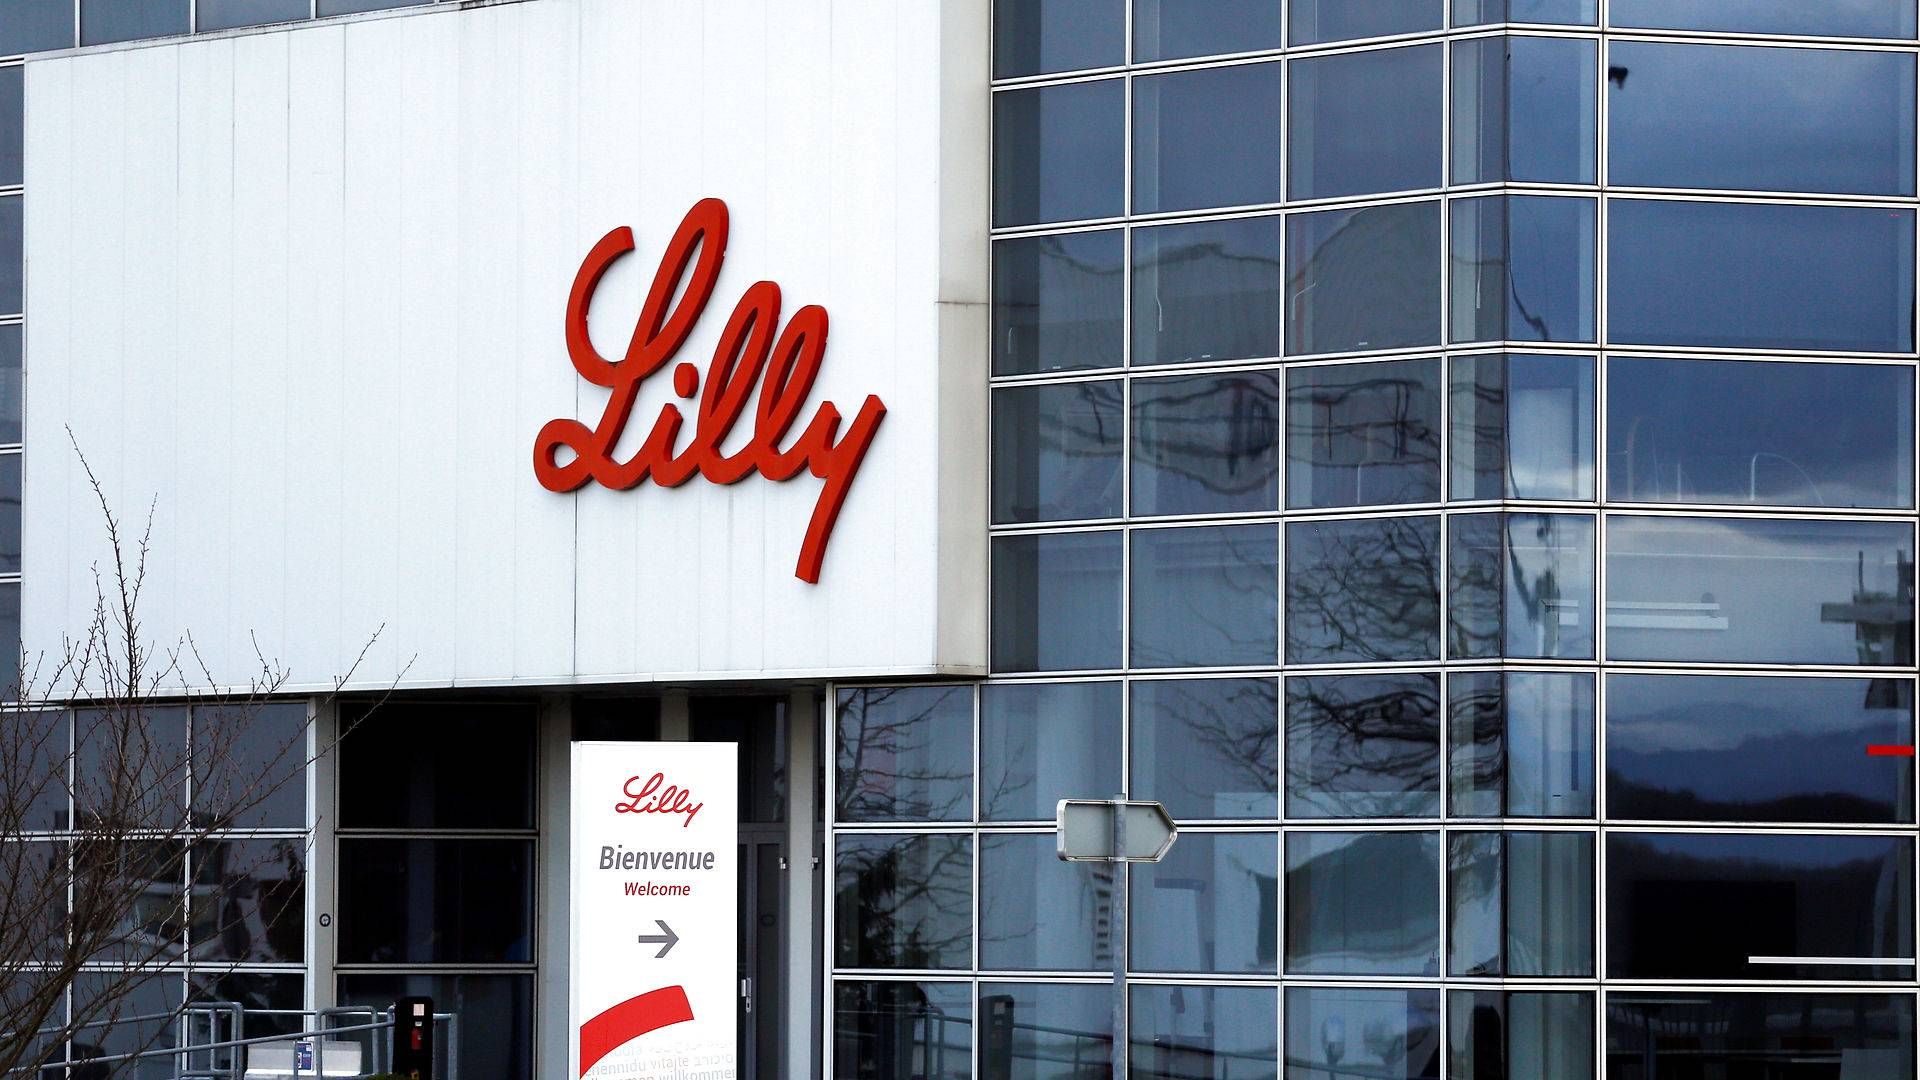 Novo Nordisk-konkurrenten Eli Lilly bygger fabrik til 3,2 mia. kr., der skal producere medicin mod diabetes. | Foto: Vincent Kessler/Reuters/Ritzau Scanpix